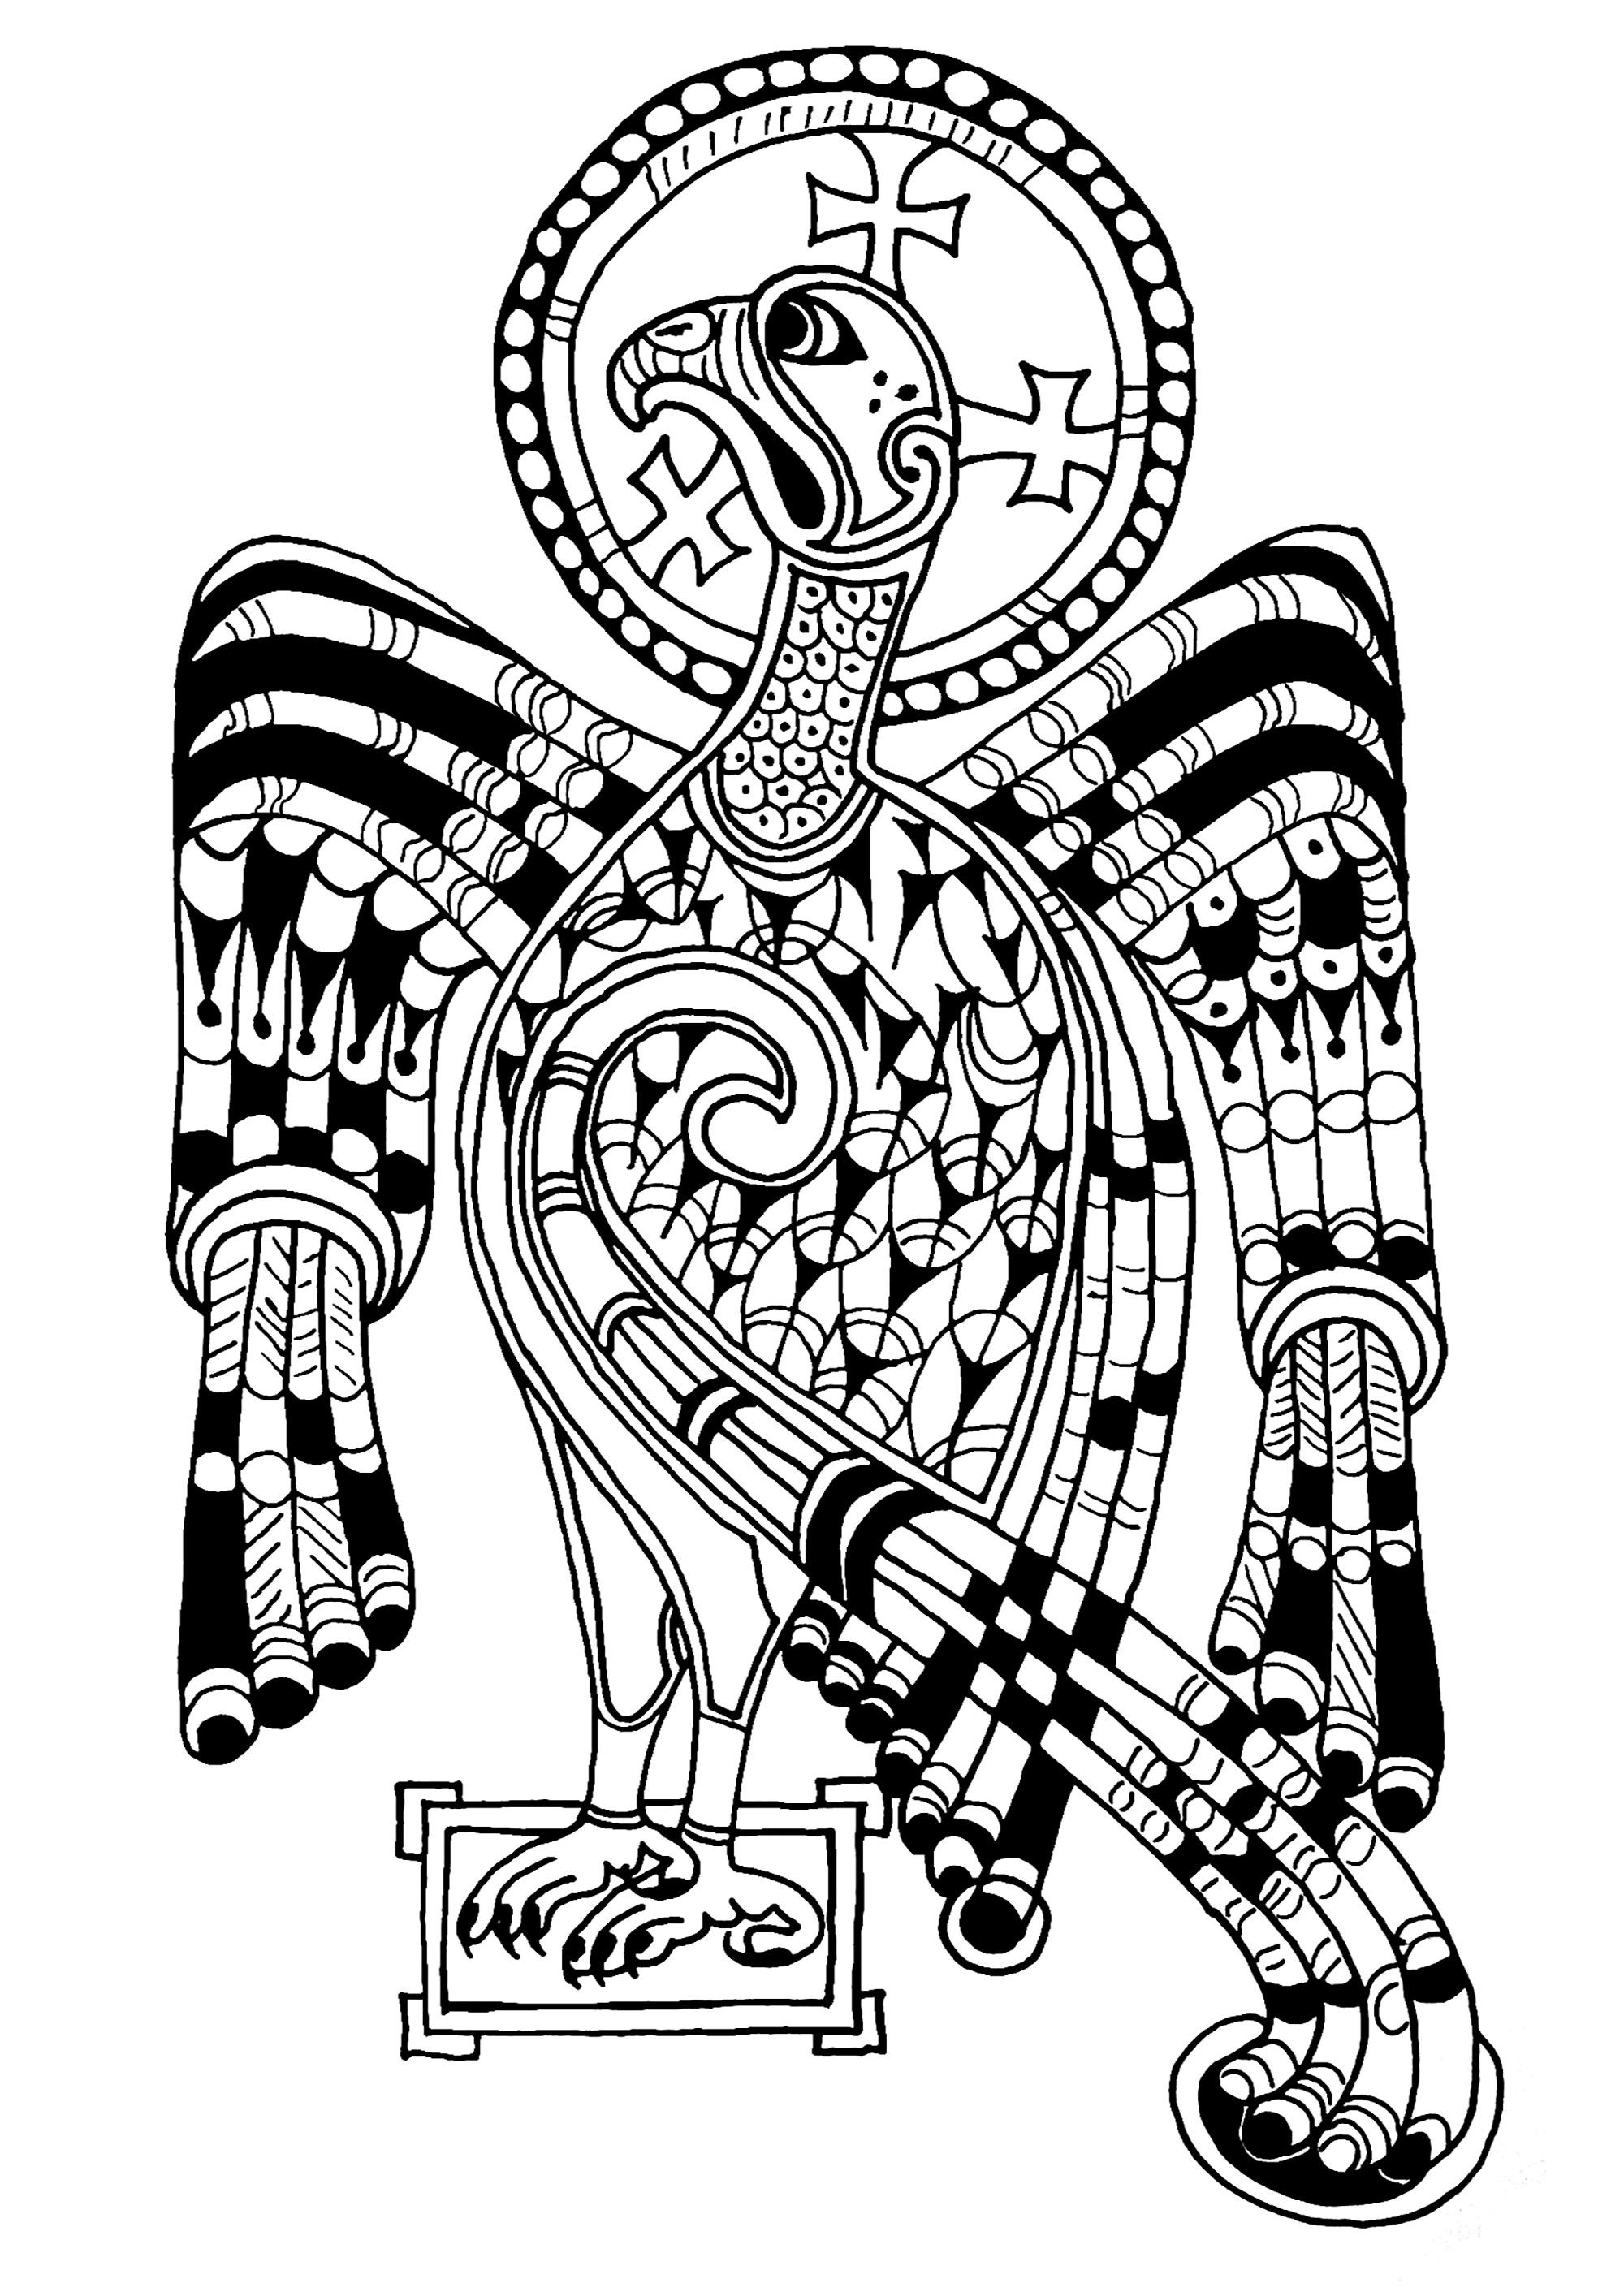 Aquila raffigurata nel Libro di Kells, simbolo di San Giovanni e dell'ascensione di Gesù. Il Libro di Kells è un manoscritto medievale risalente al IX secolo, di cui rimangono 680 pagine. Contiene i quattro Vangeli latini del Nuovo Testamento. È esposto presso la Biblioteca del Trinity College di Dublino.